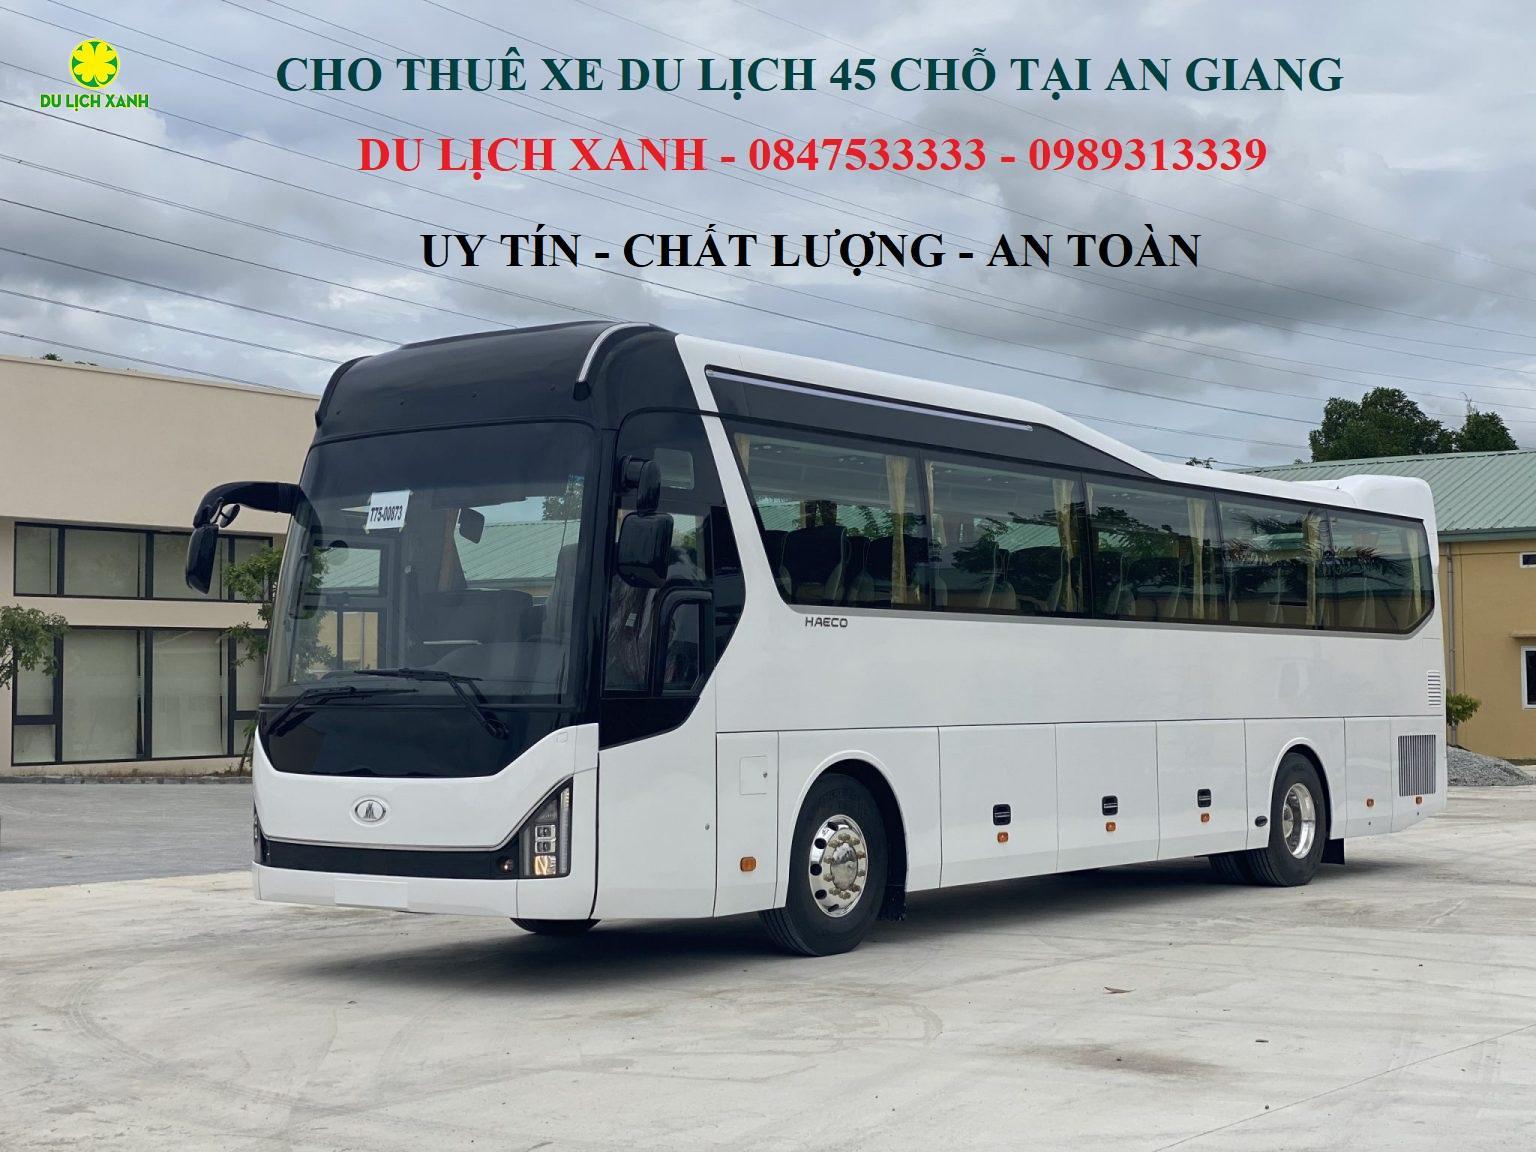 Cho thuê xe du lịch 45 chỗ tại An Giang